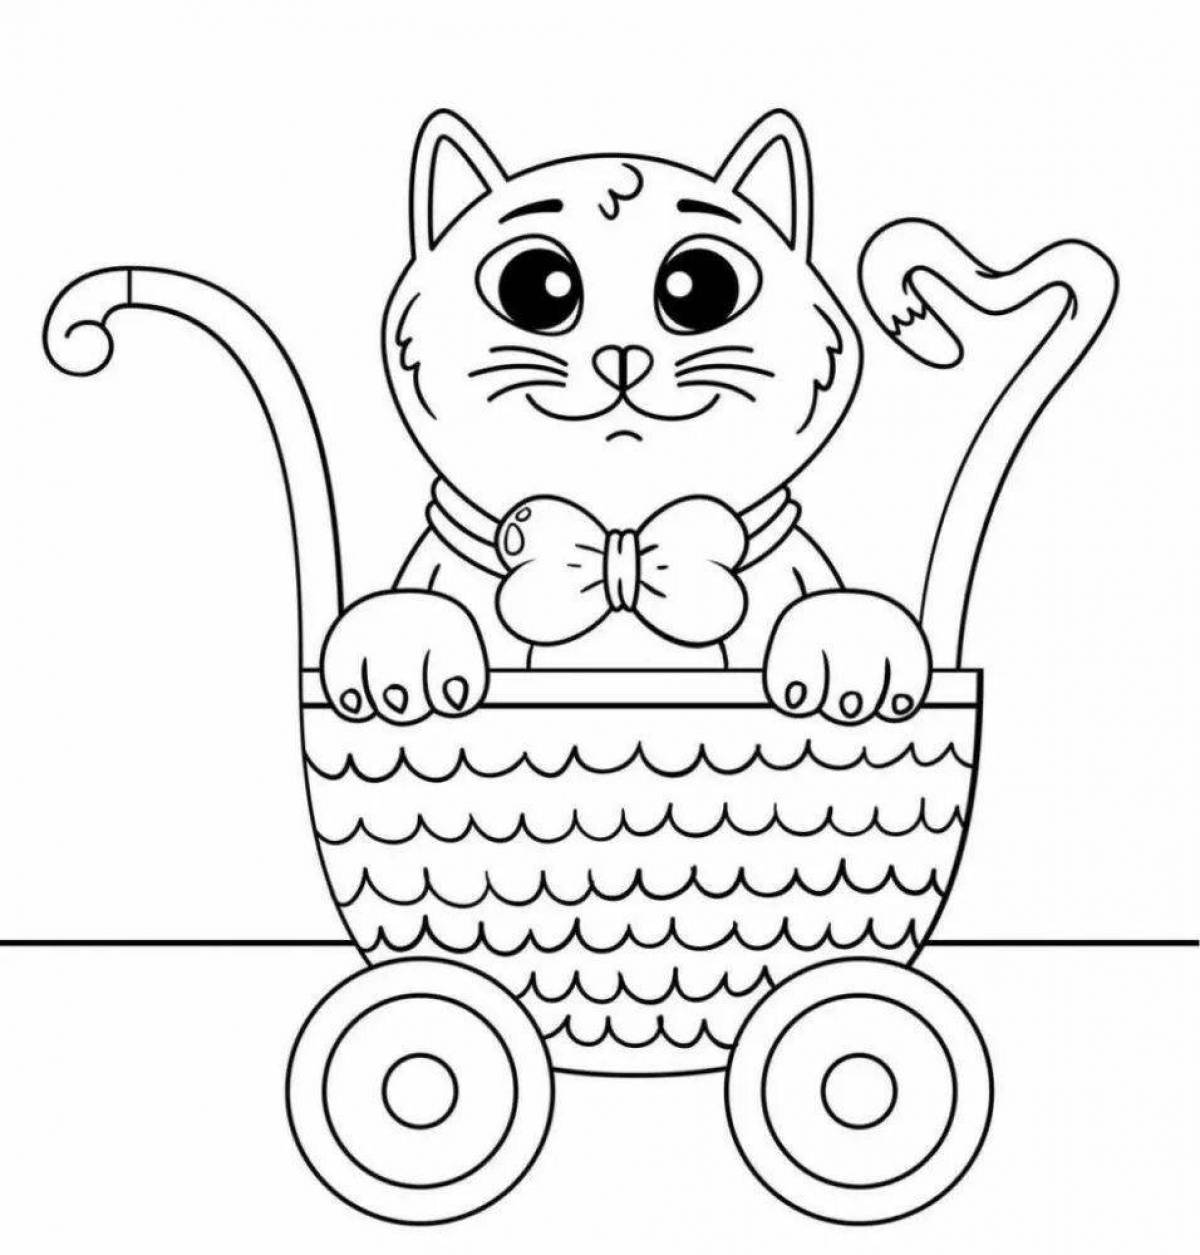 Friendly kittens in a basket